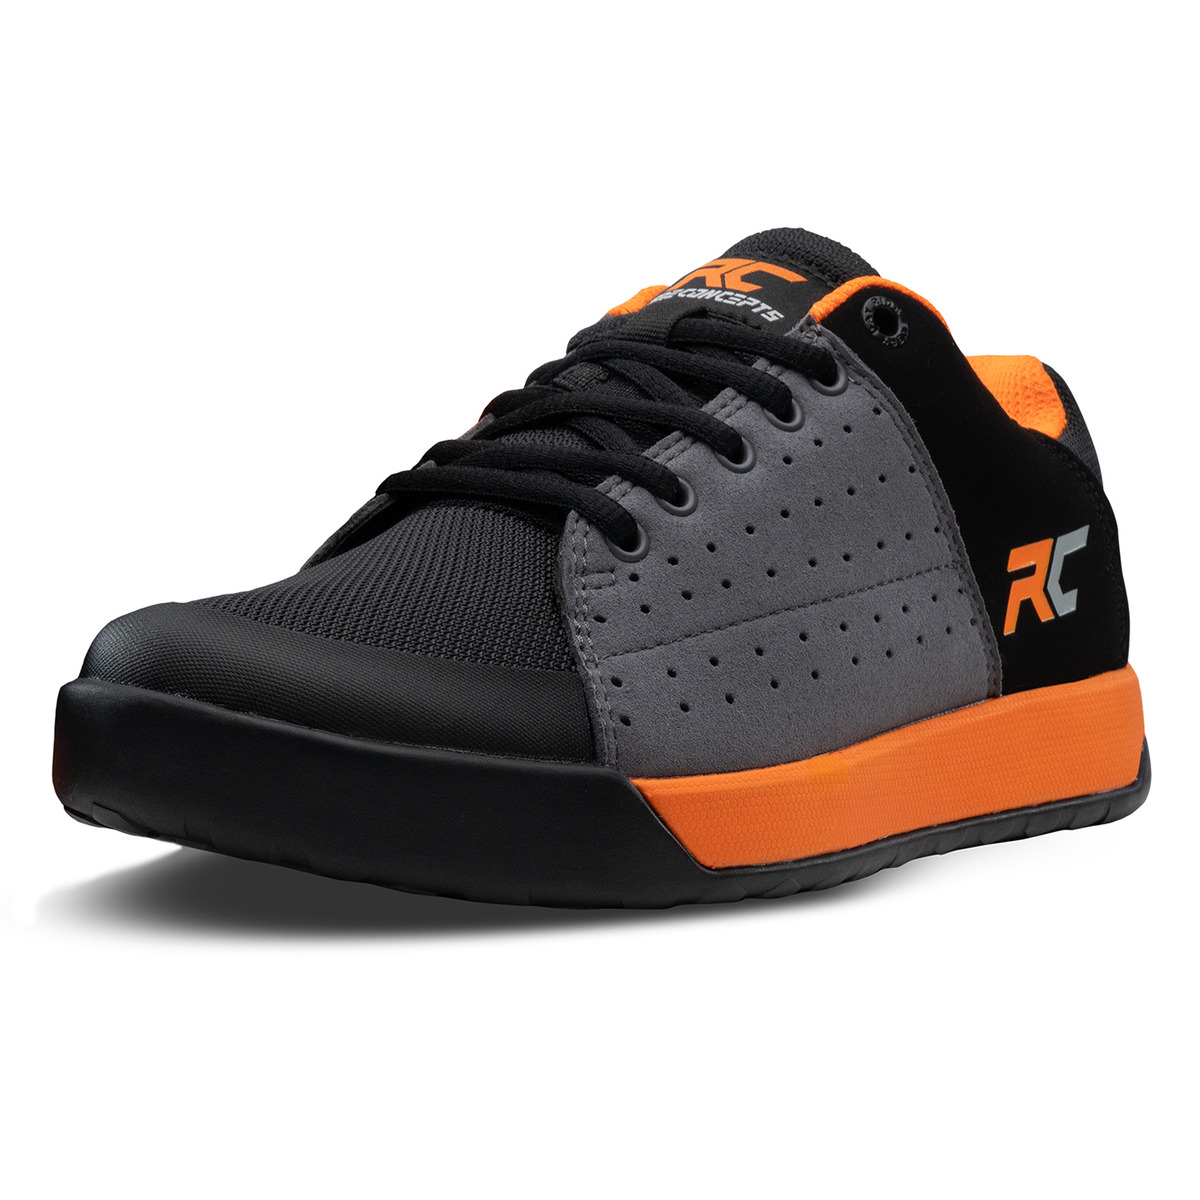 Orangefarbene Livewire Flat MTB-Schuhe, Größe 46